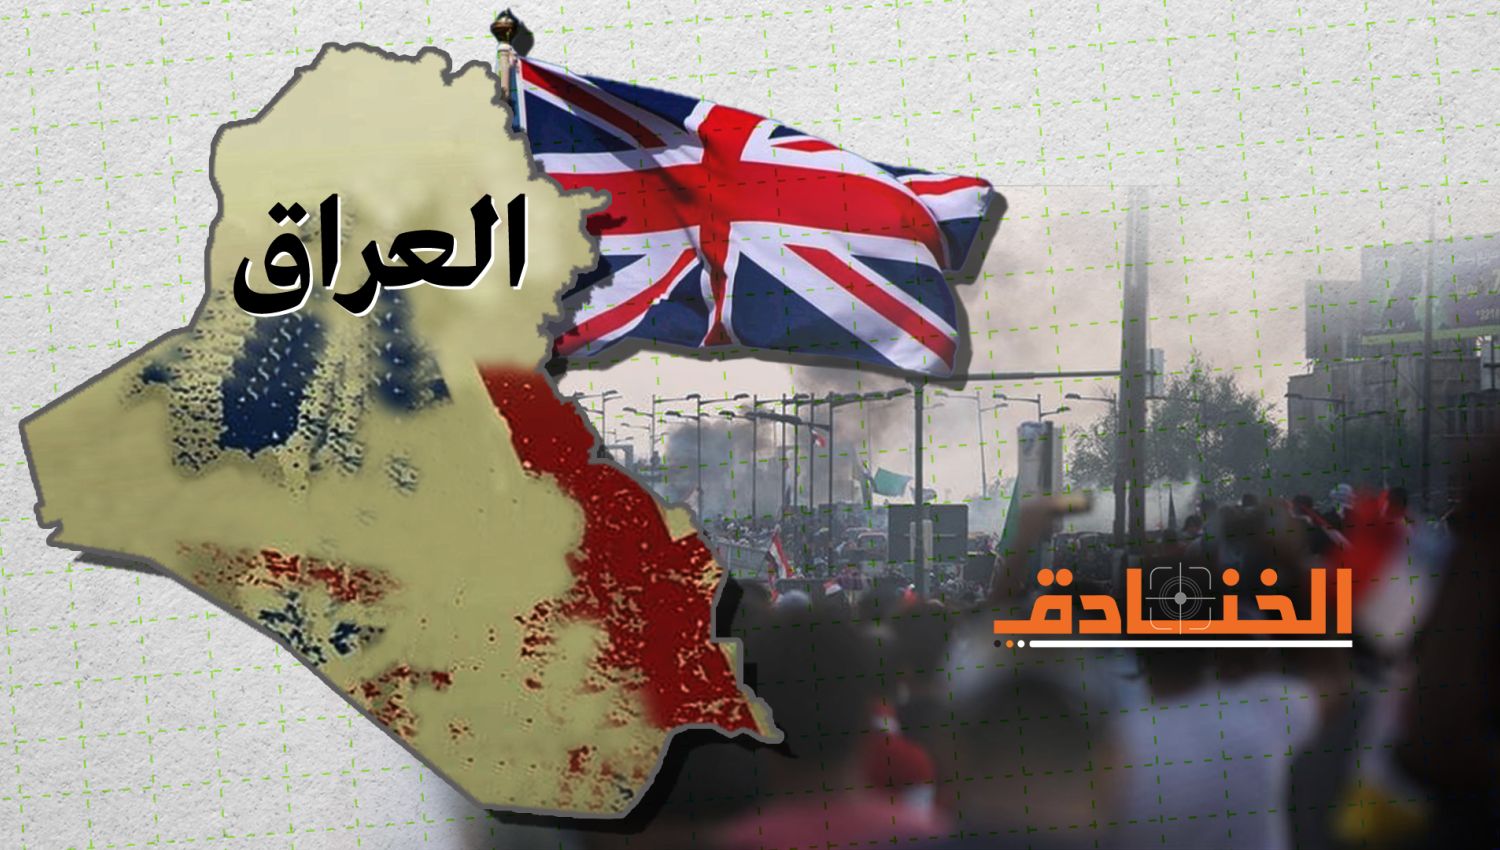 بريطانيا: تجييش الخطابات للتحريض في المجتمع العراقي!